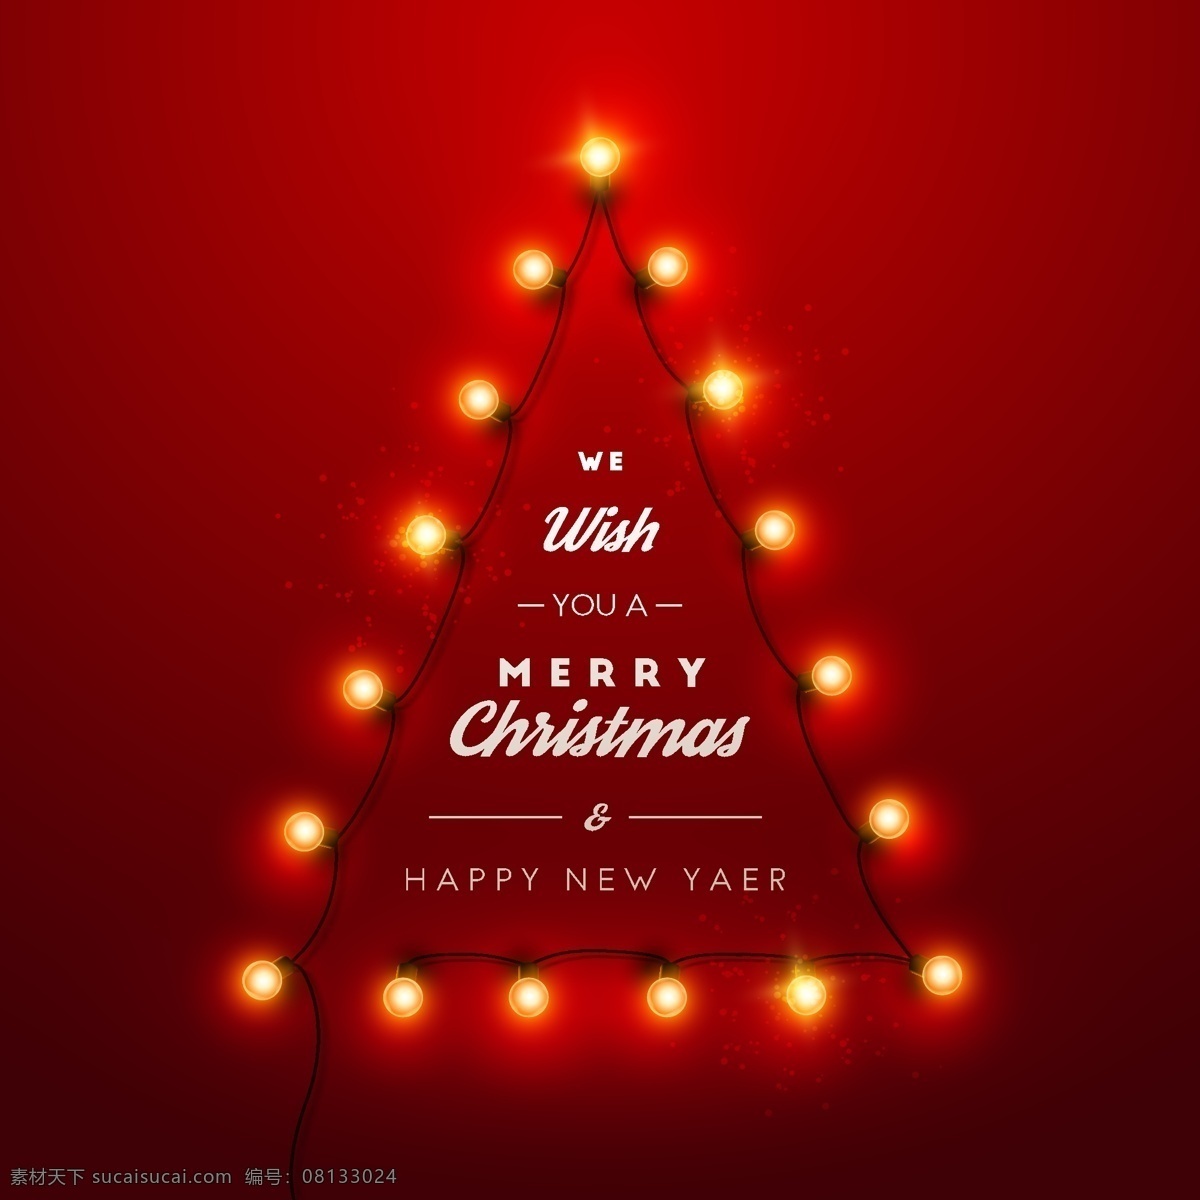 创意 灯串 组合 圣诞树 矢量 merry christmas happy new year 彩灯 新年快乐 圣诞节 矢量图 最新矢量图